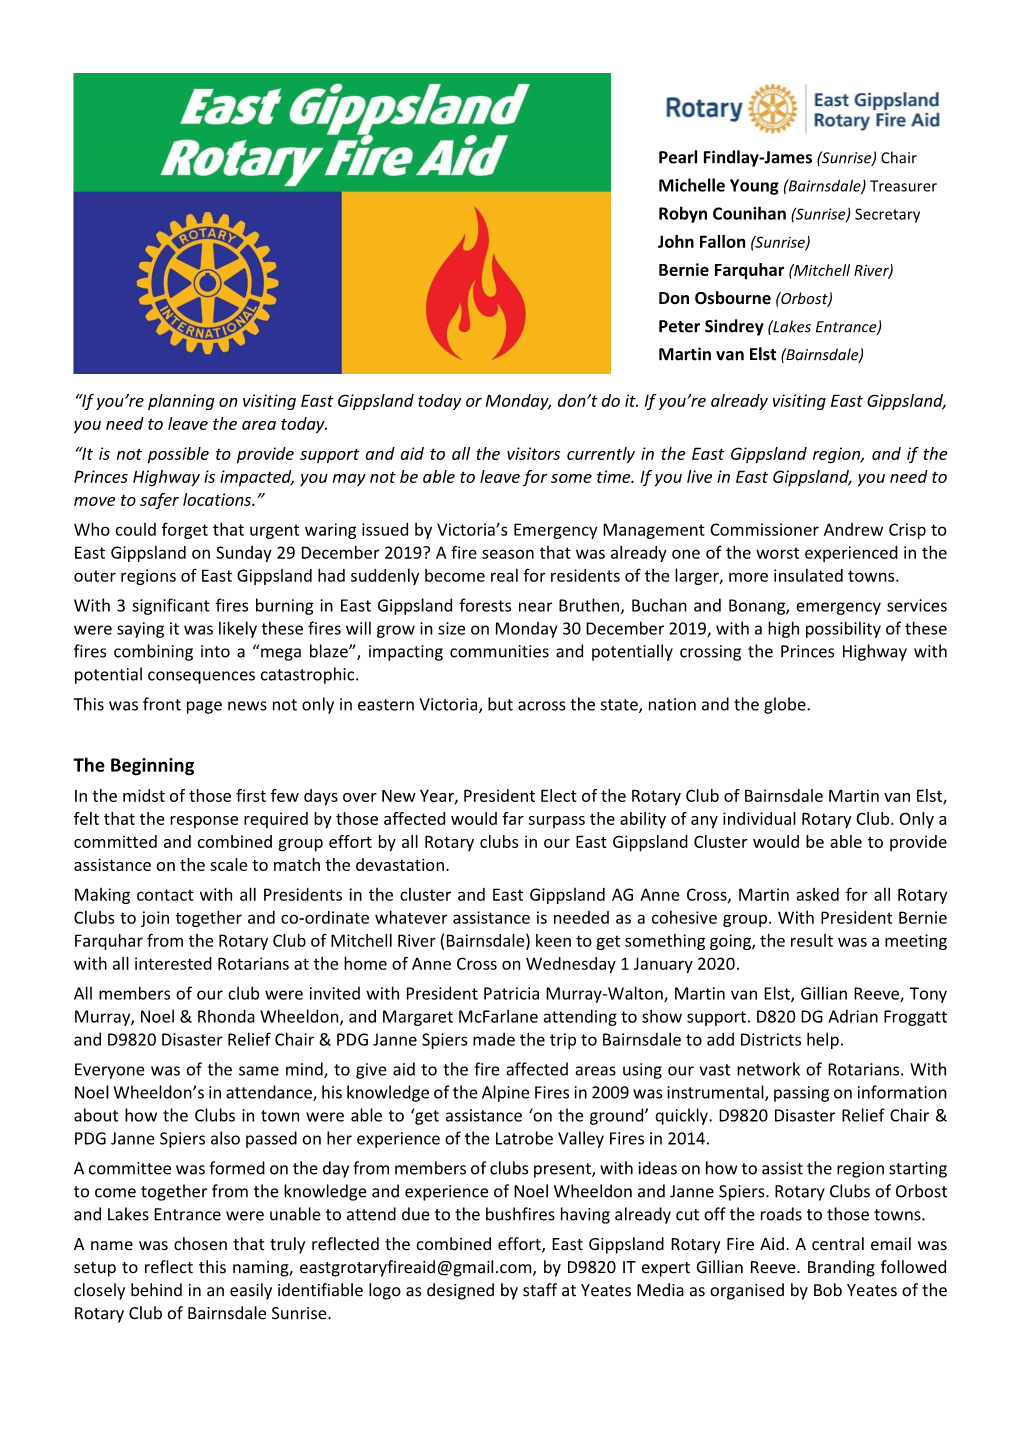 East Gippsland Rotary Fire Aid Report 2019-2020